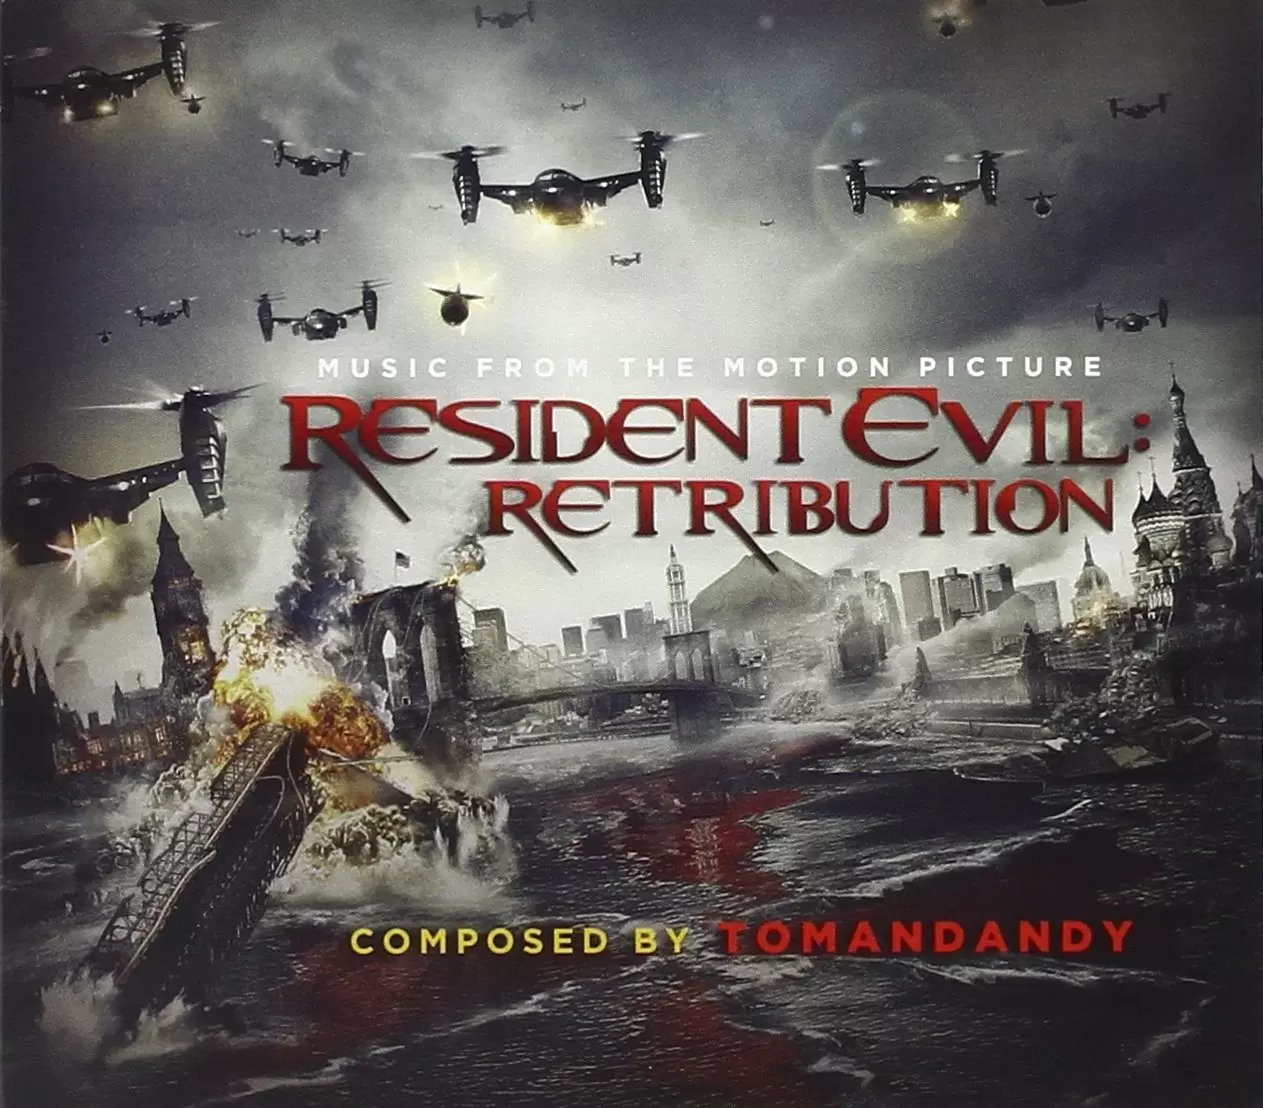 Bande originale de films, jeux vidéos et séries TV - Resident Evil : Retribution